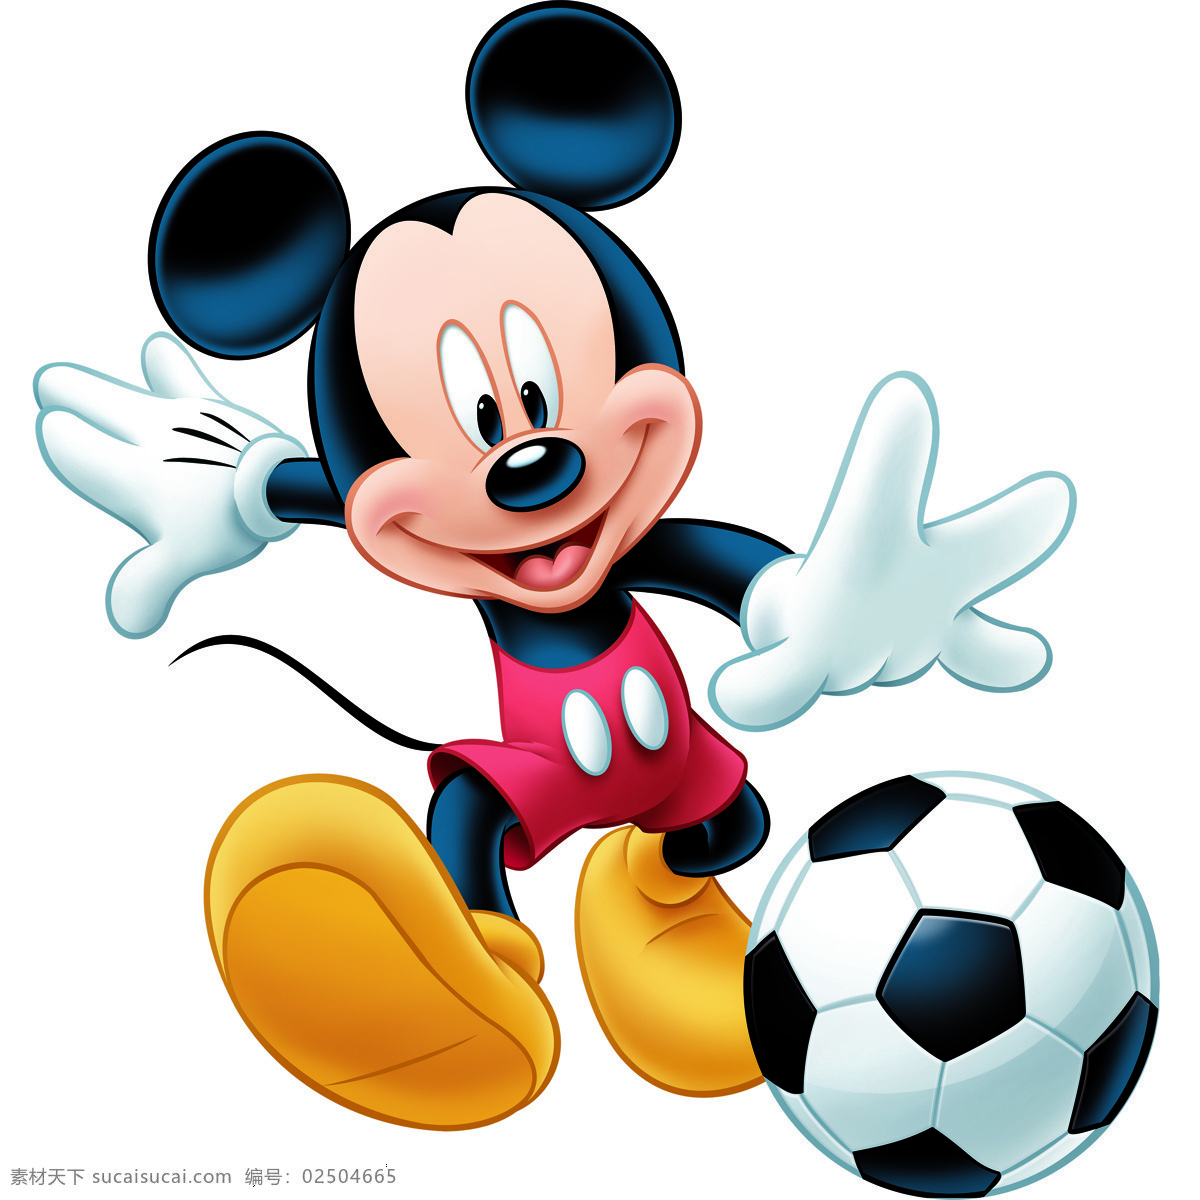 可爱的米老鼠 米老鼠 卡通 可爱 迪士尼 卡通动物 米奇 米妮 头像 动漫 乐园 壁画 装饰画 插画 老鼠 踢足球 动漫动画 动漫人物